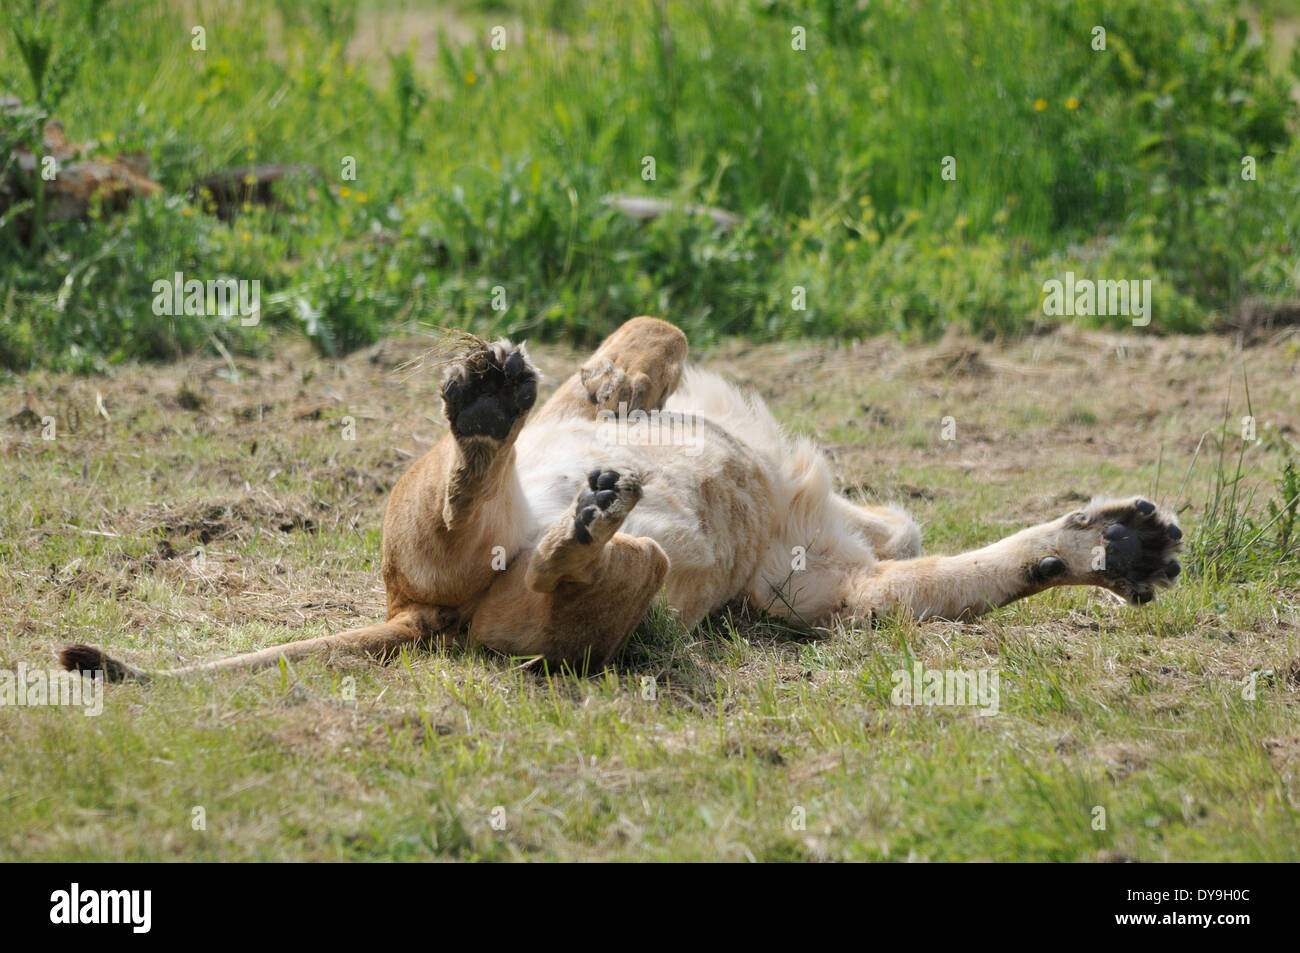 Angolan lion at the 'Parc des Felins' Stock Photo